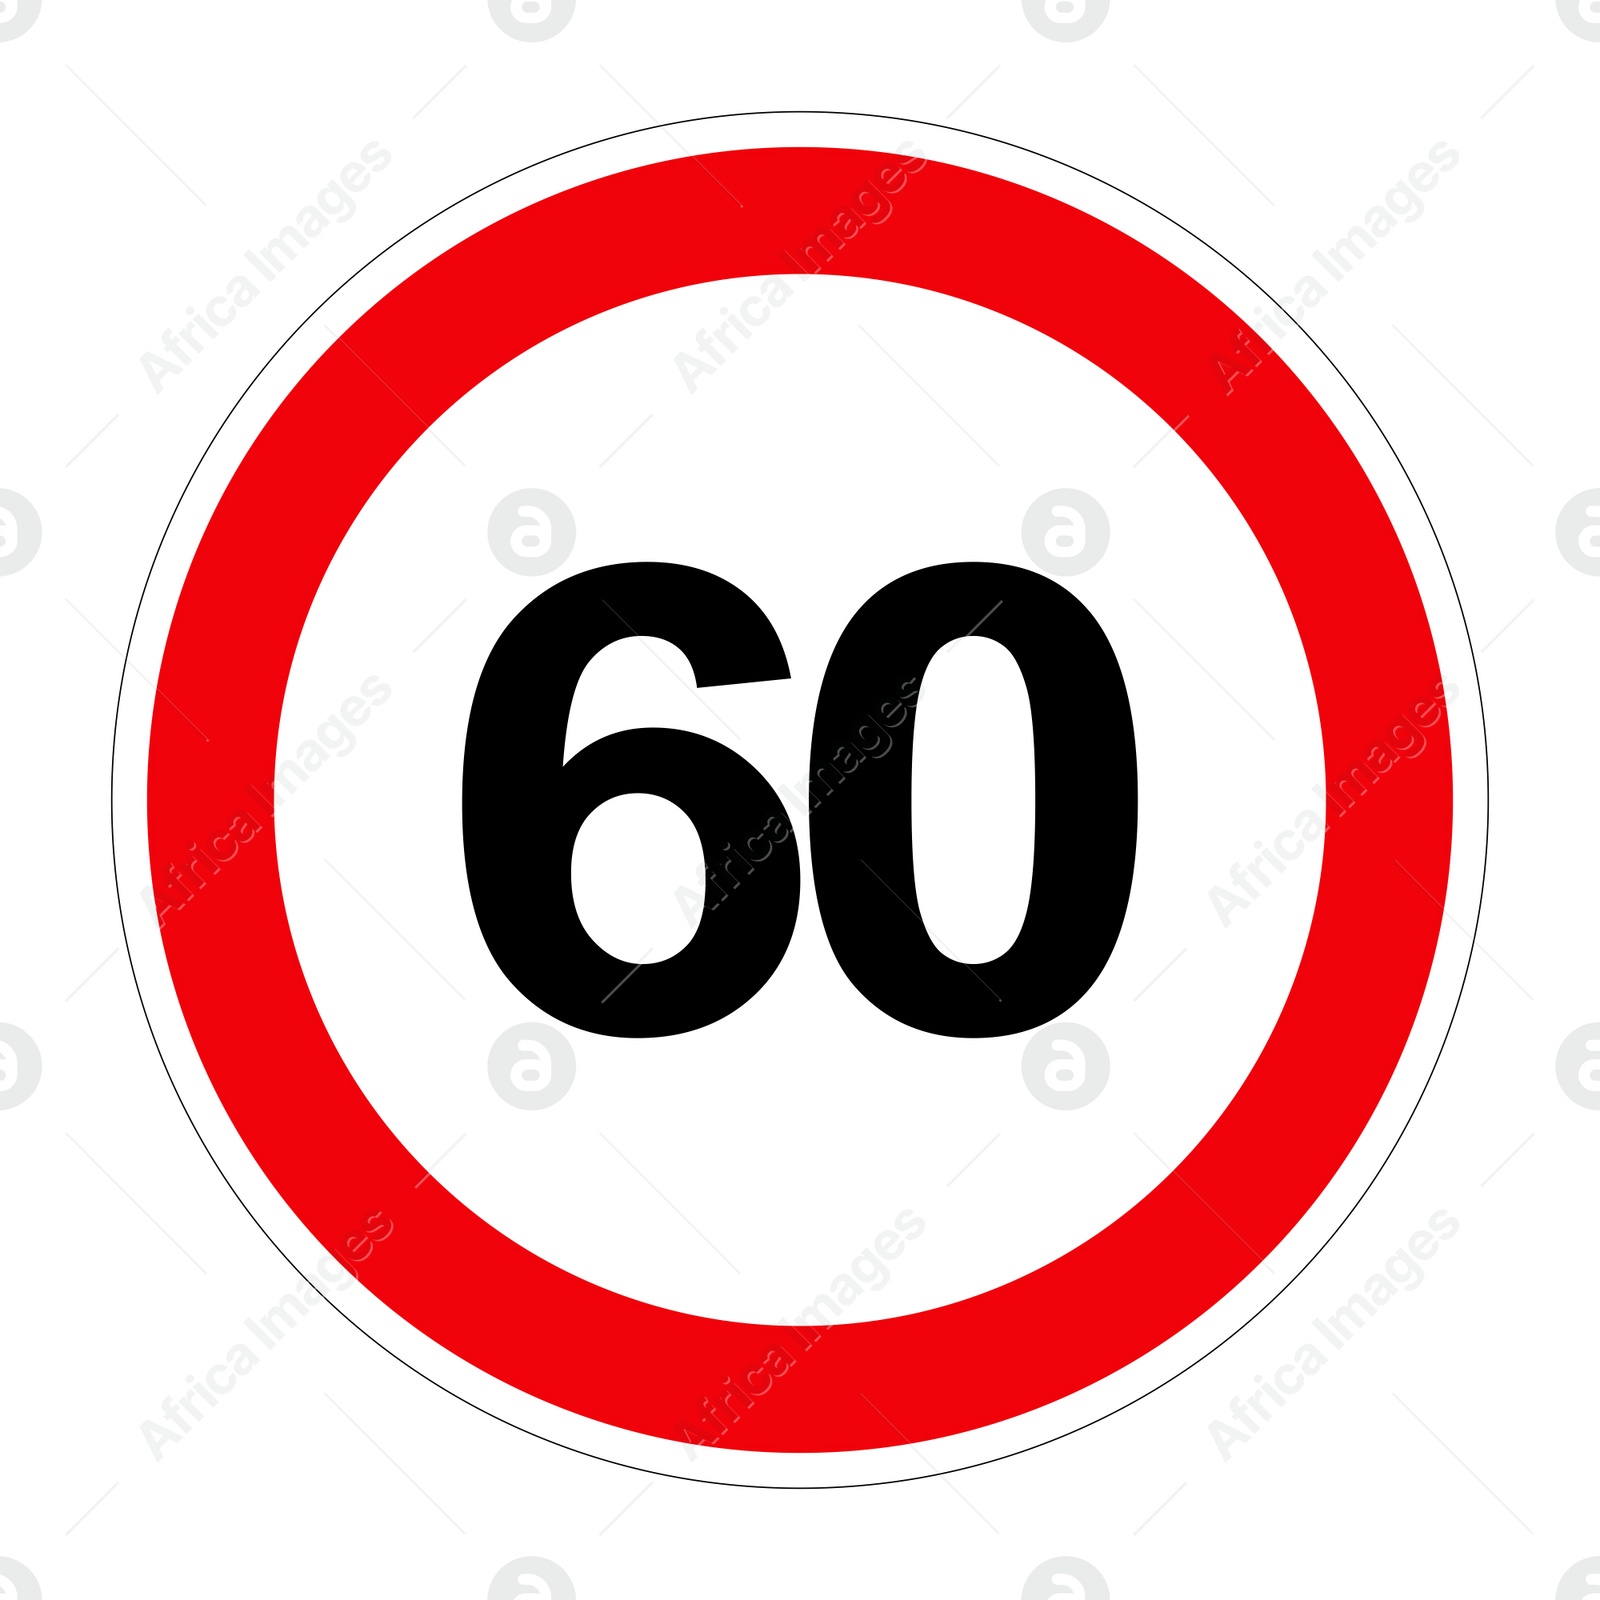 Illustration of Road sign MAXIMUM SPEED 60 on white background, illustration 